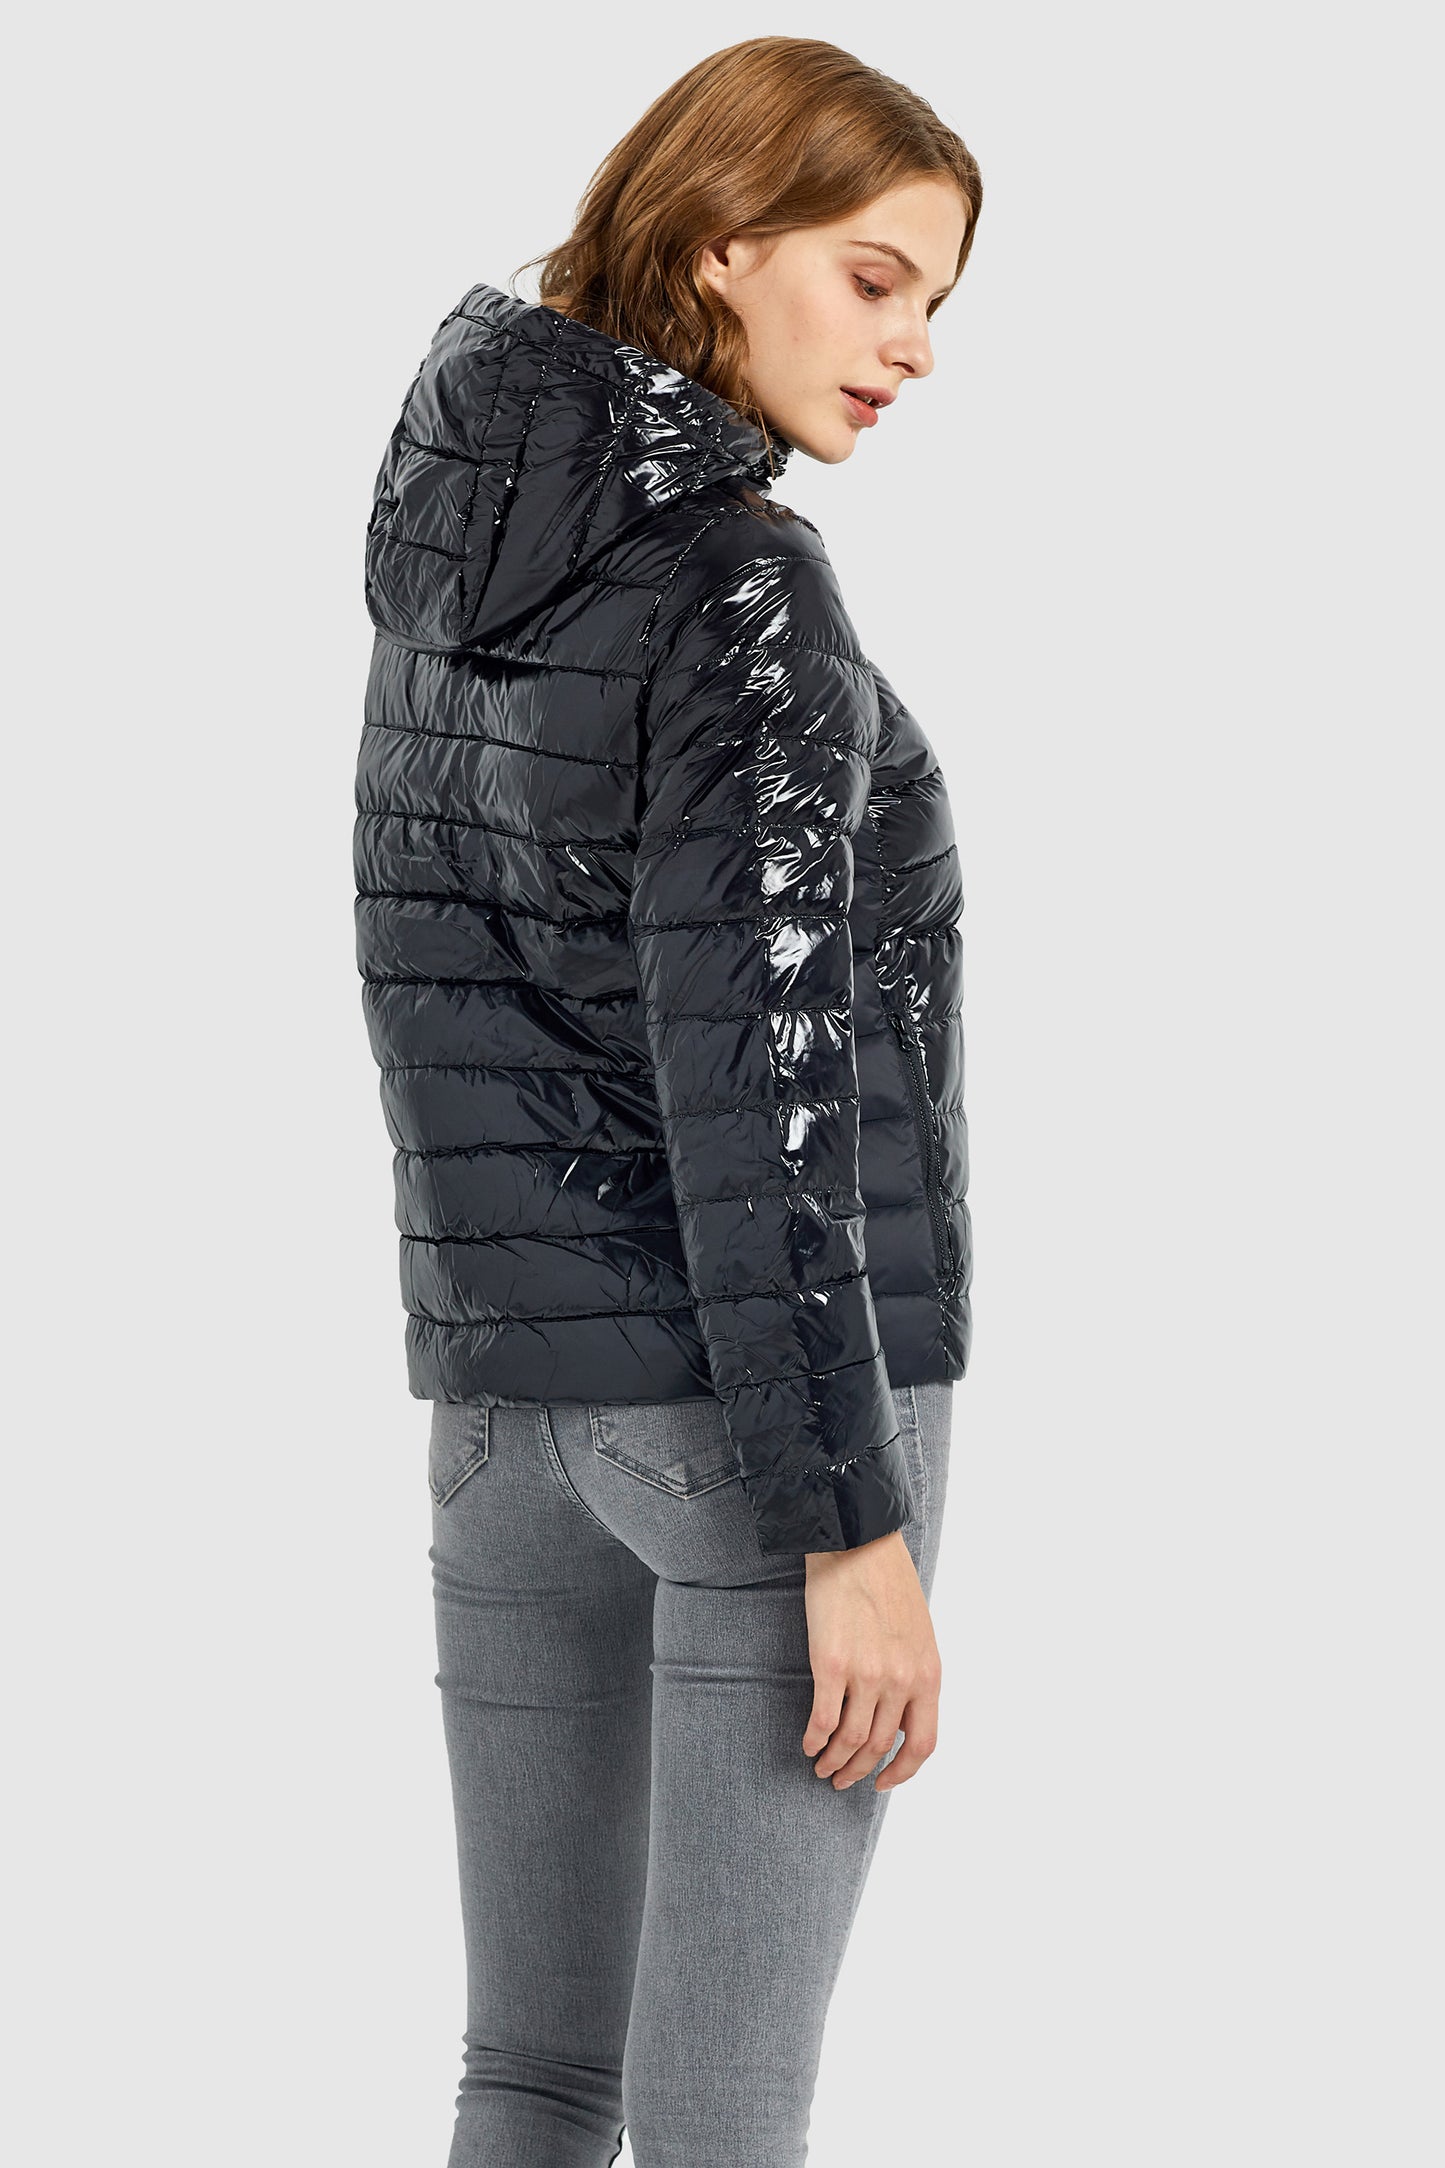 Inclined Zipper Sporty Winter Coat